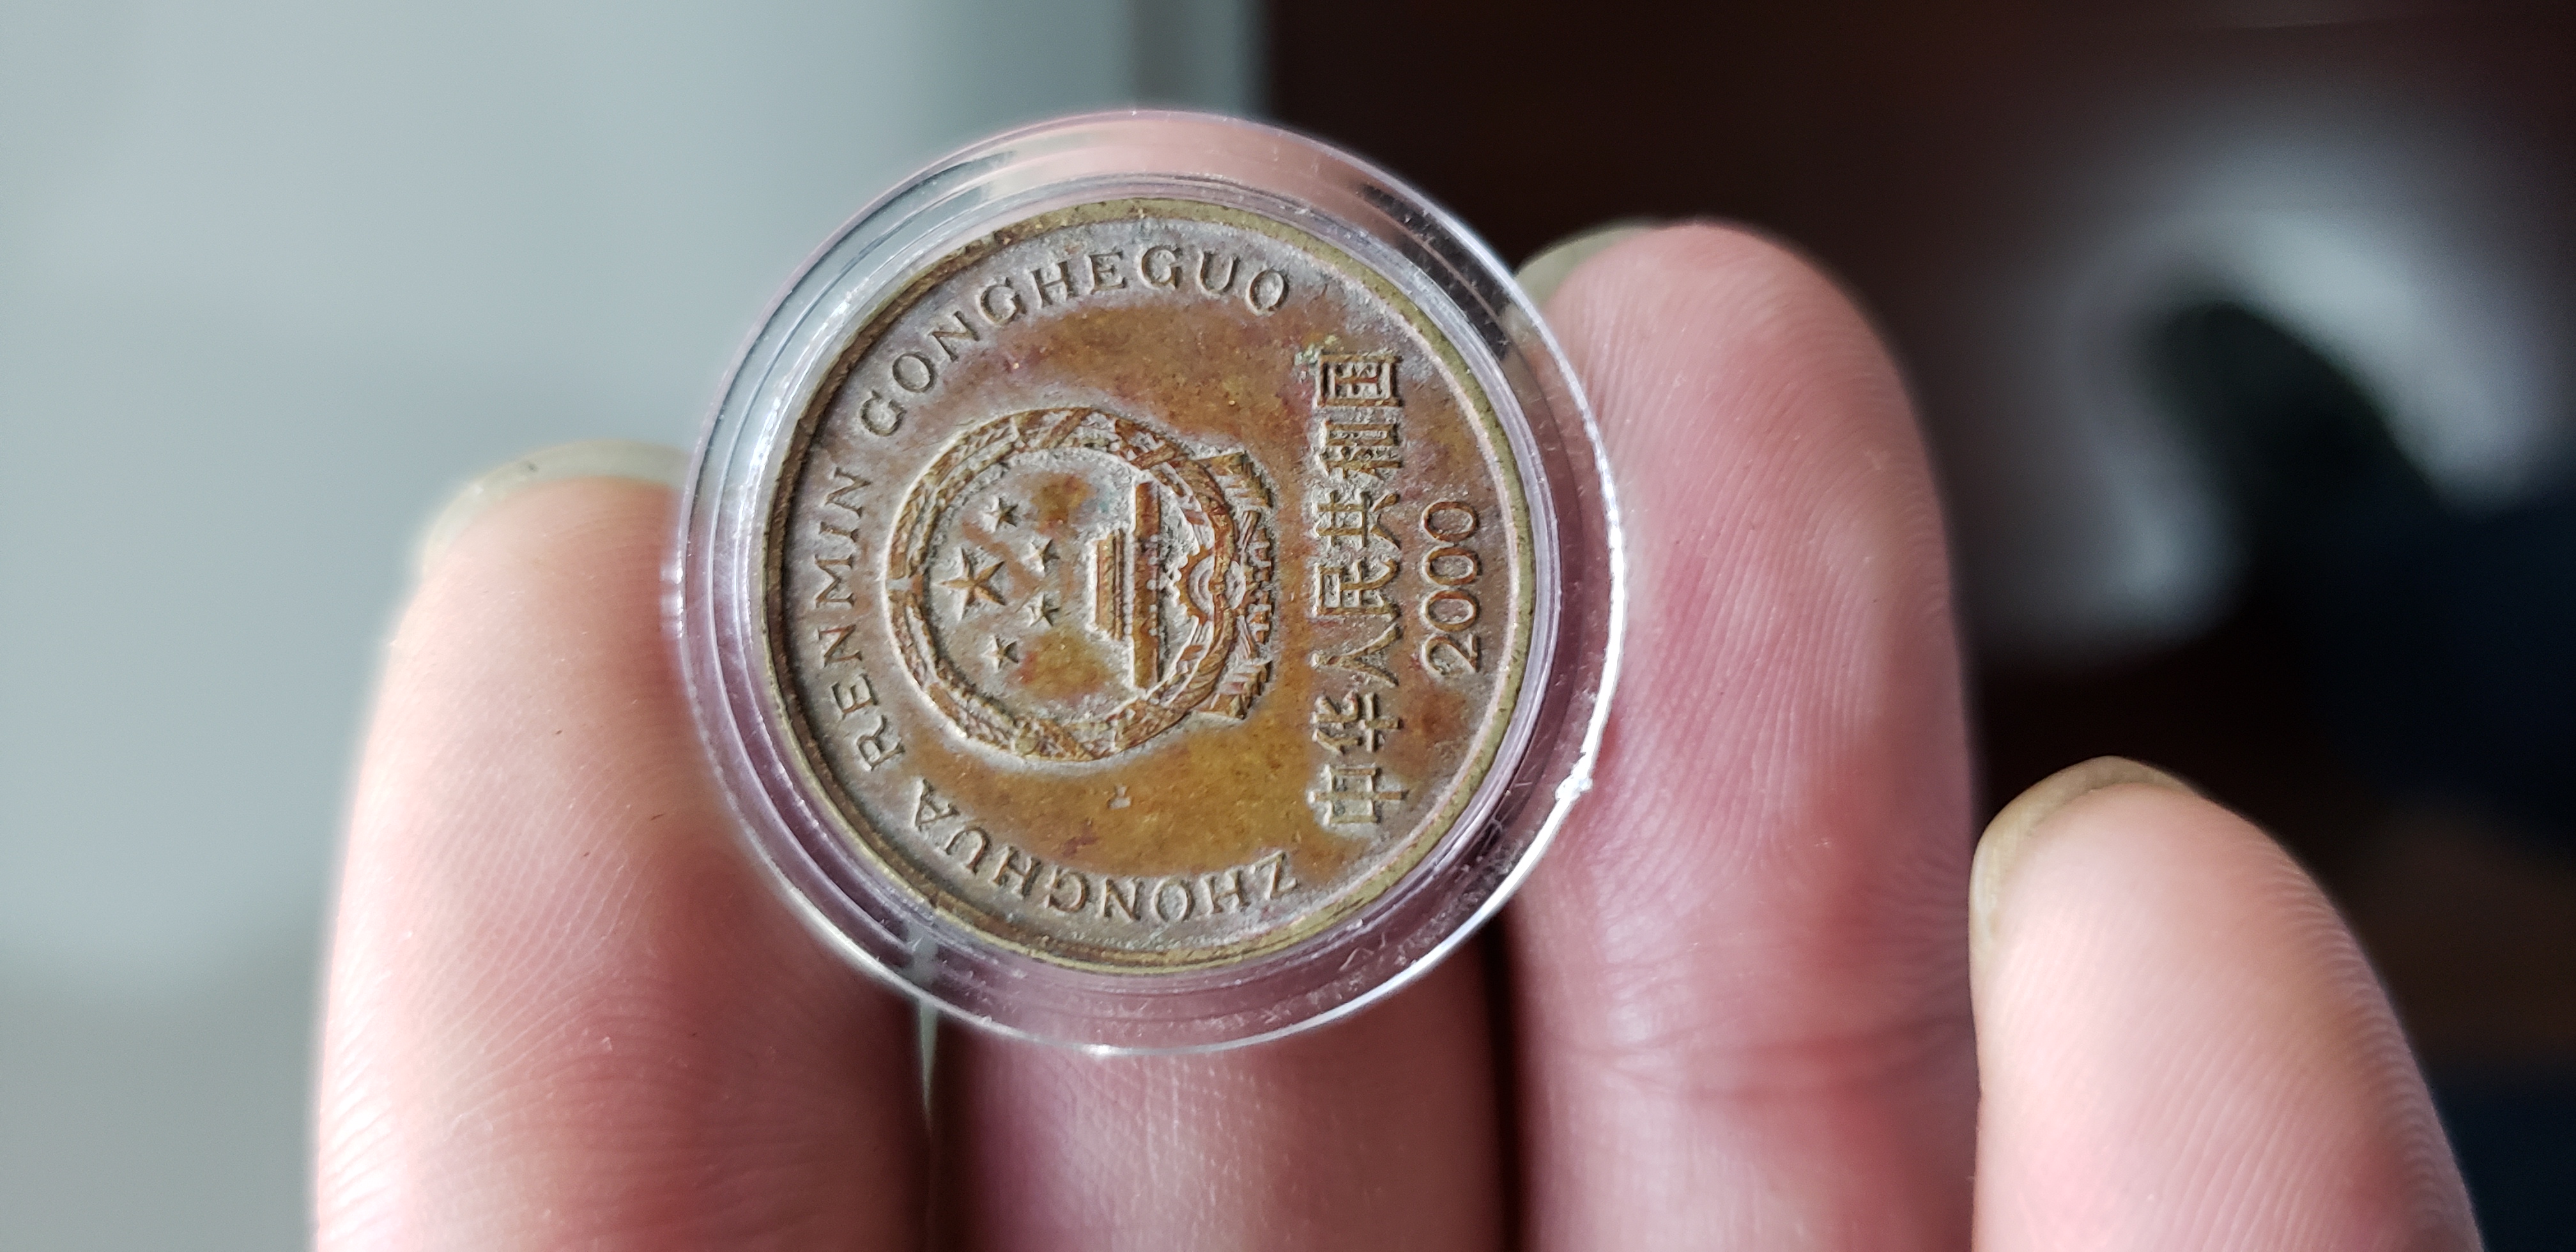 2000年5角硬币图片